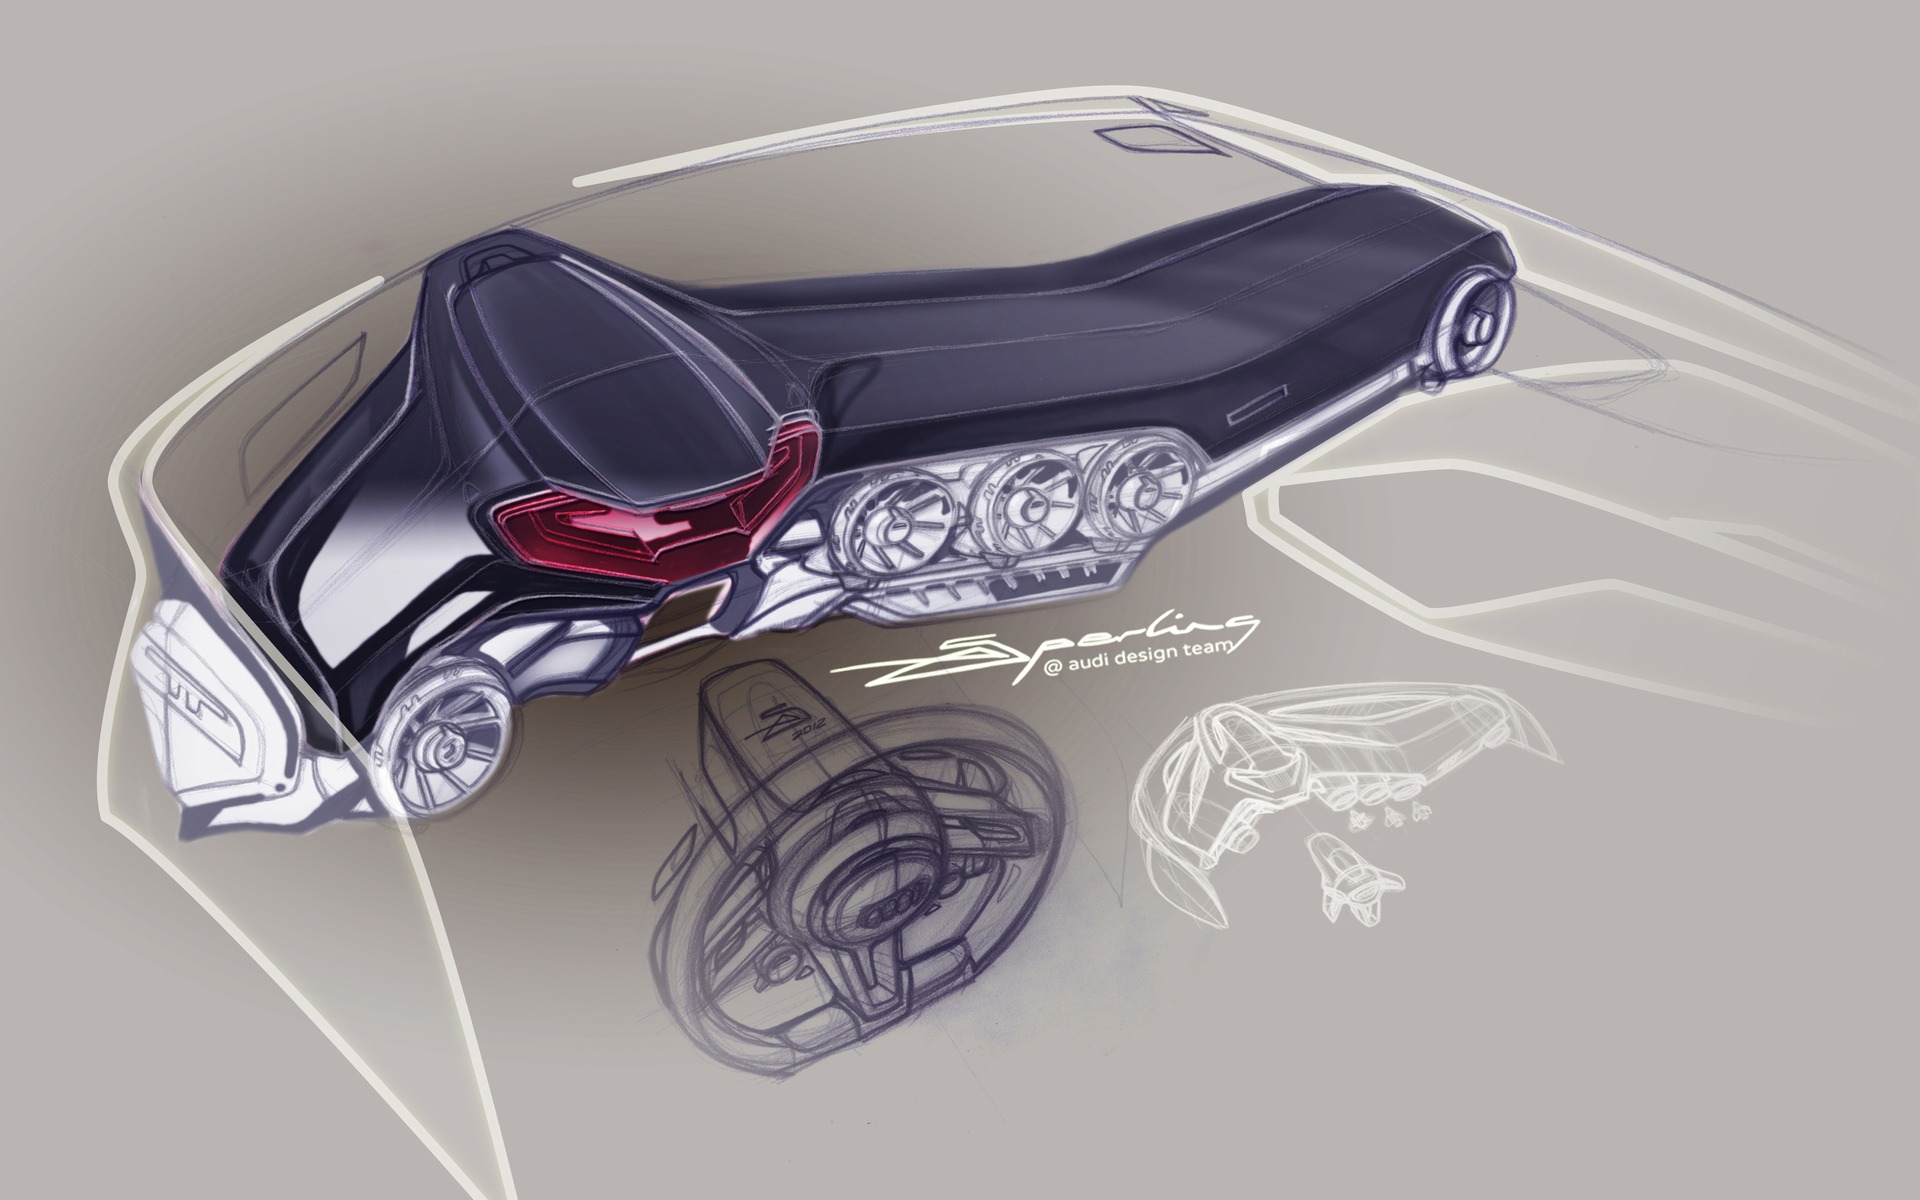 Cockpit virtuel Audi - Sketch de design